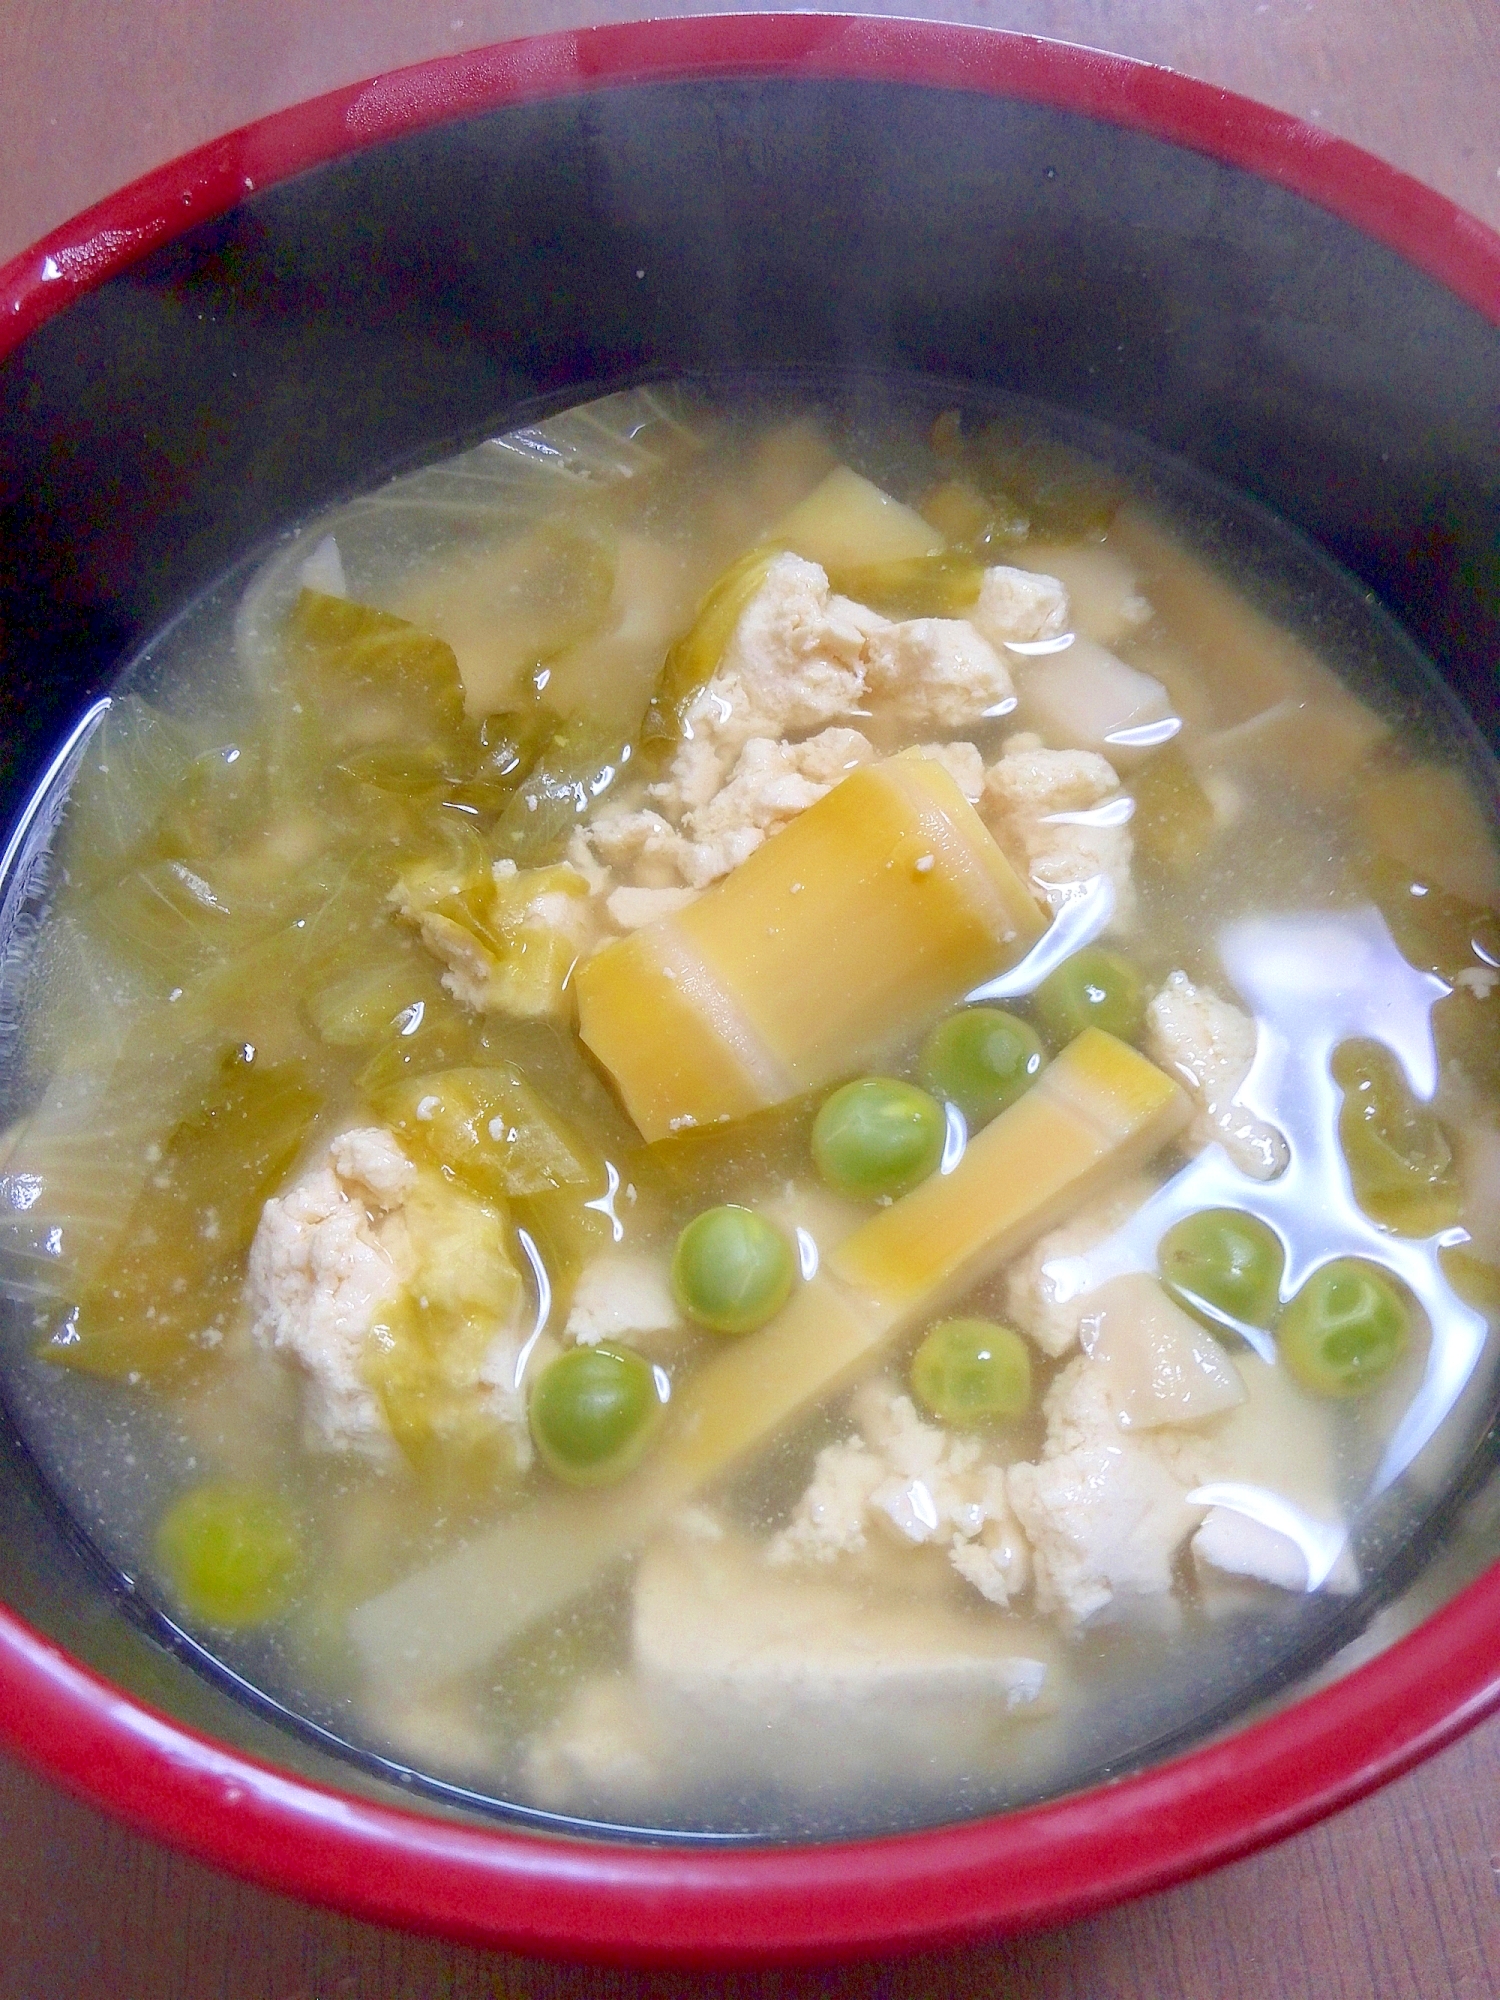 くずし豆腐とタケノコ、グリンピースのスープ